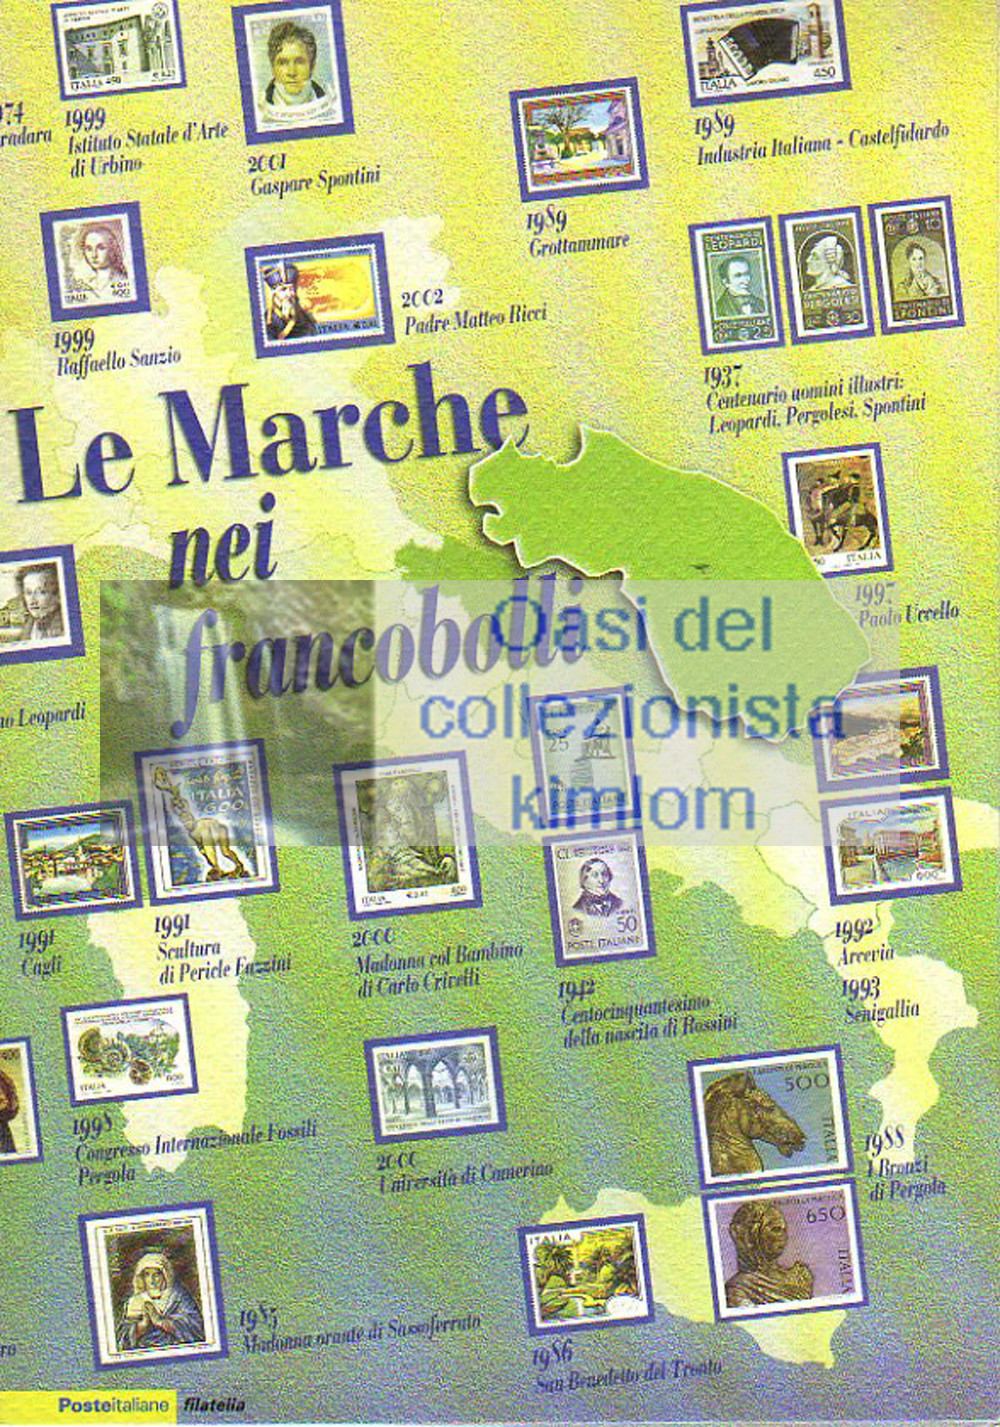 folder - Le Marche nei francobolli